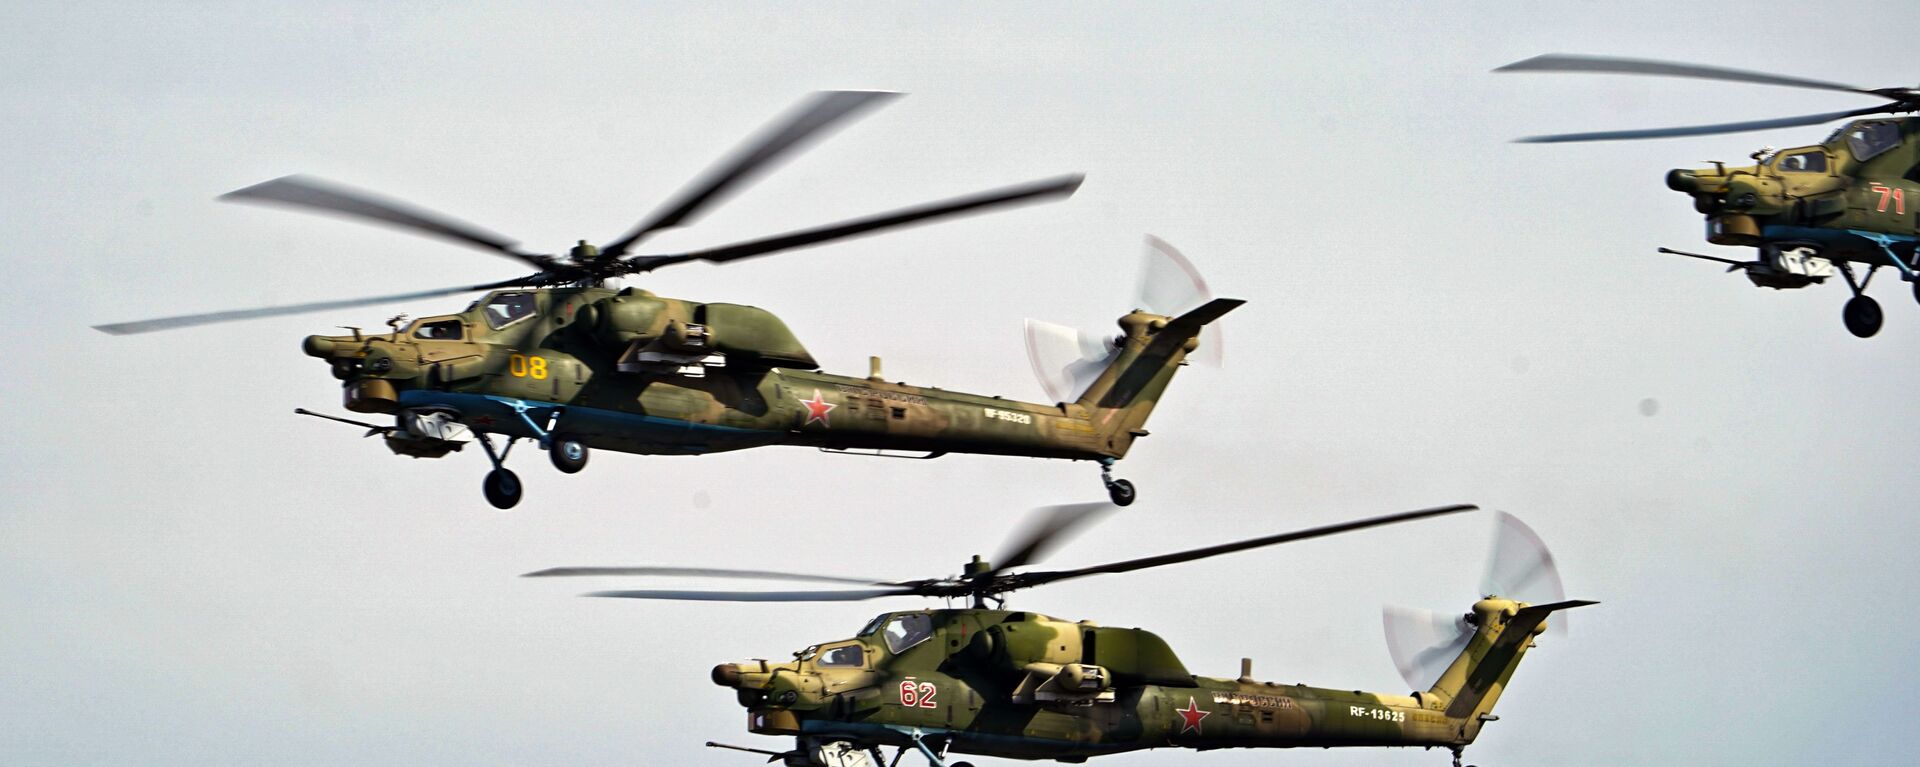 Ударни хеликоптери Ми-28 Ноћни ловац током показног лета у оквиру Међународног војно-техничког форума Армија 2020 - Sputnik Србија, 1920, 07.11.2020